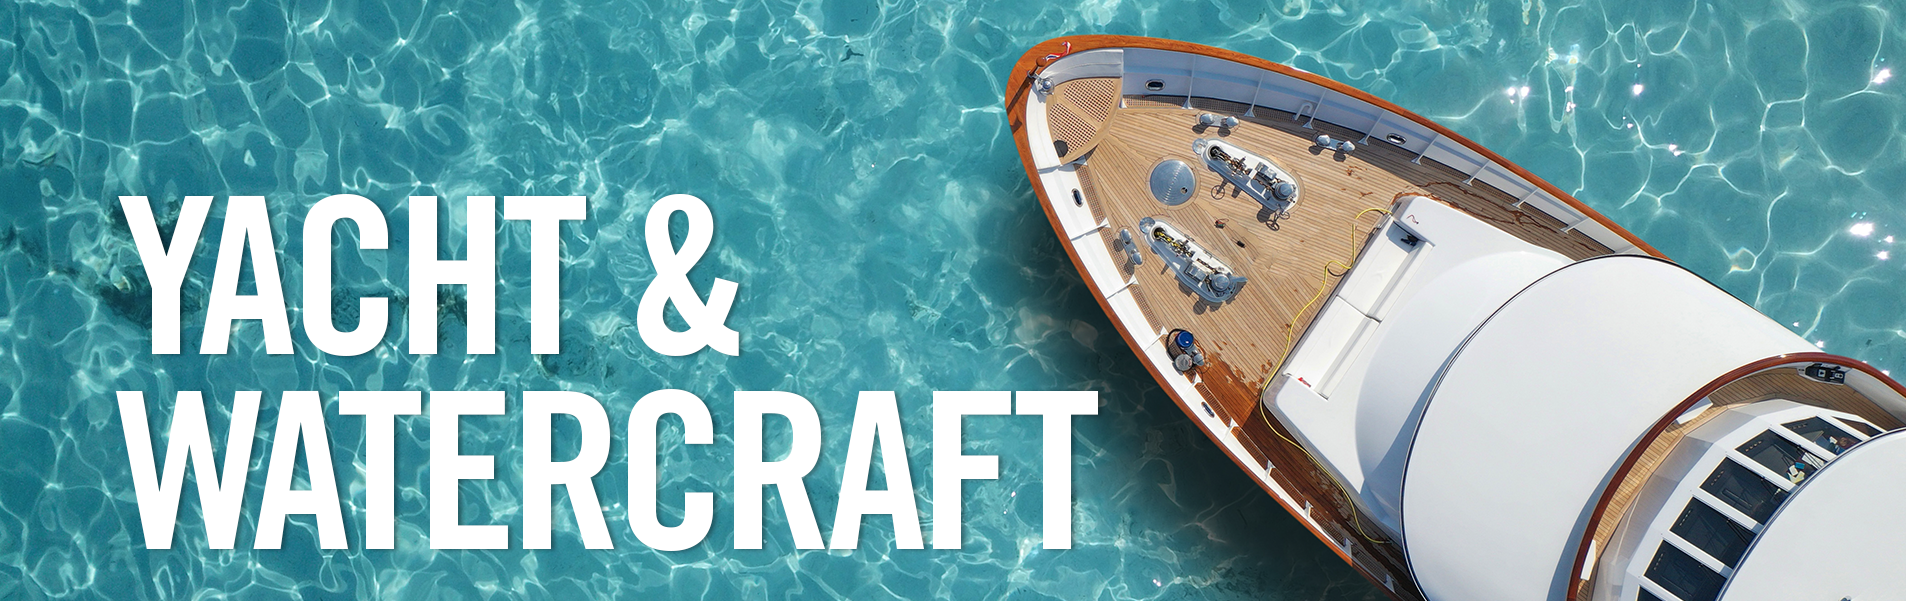 yacht insurance, boat insurance, watercraft insurance